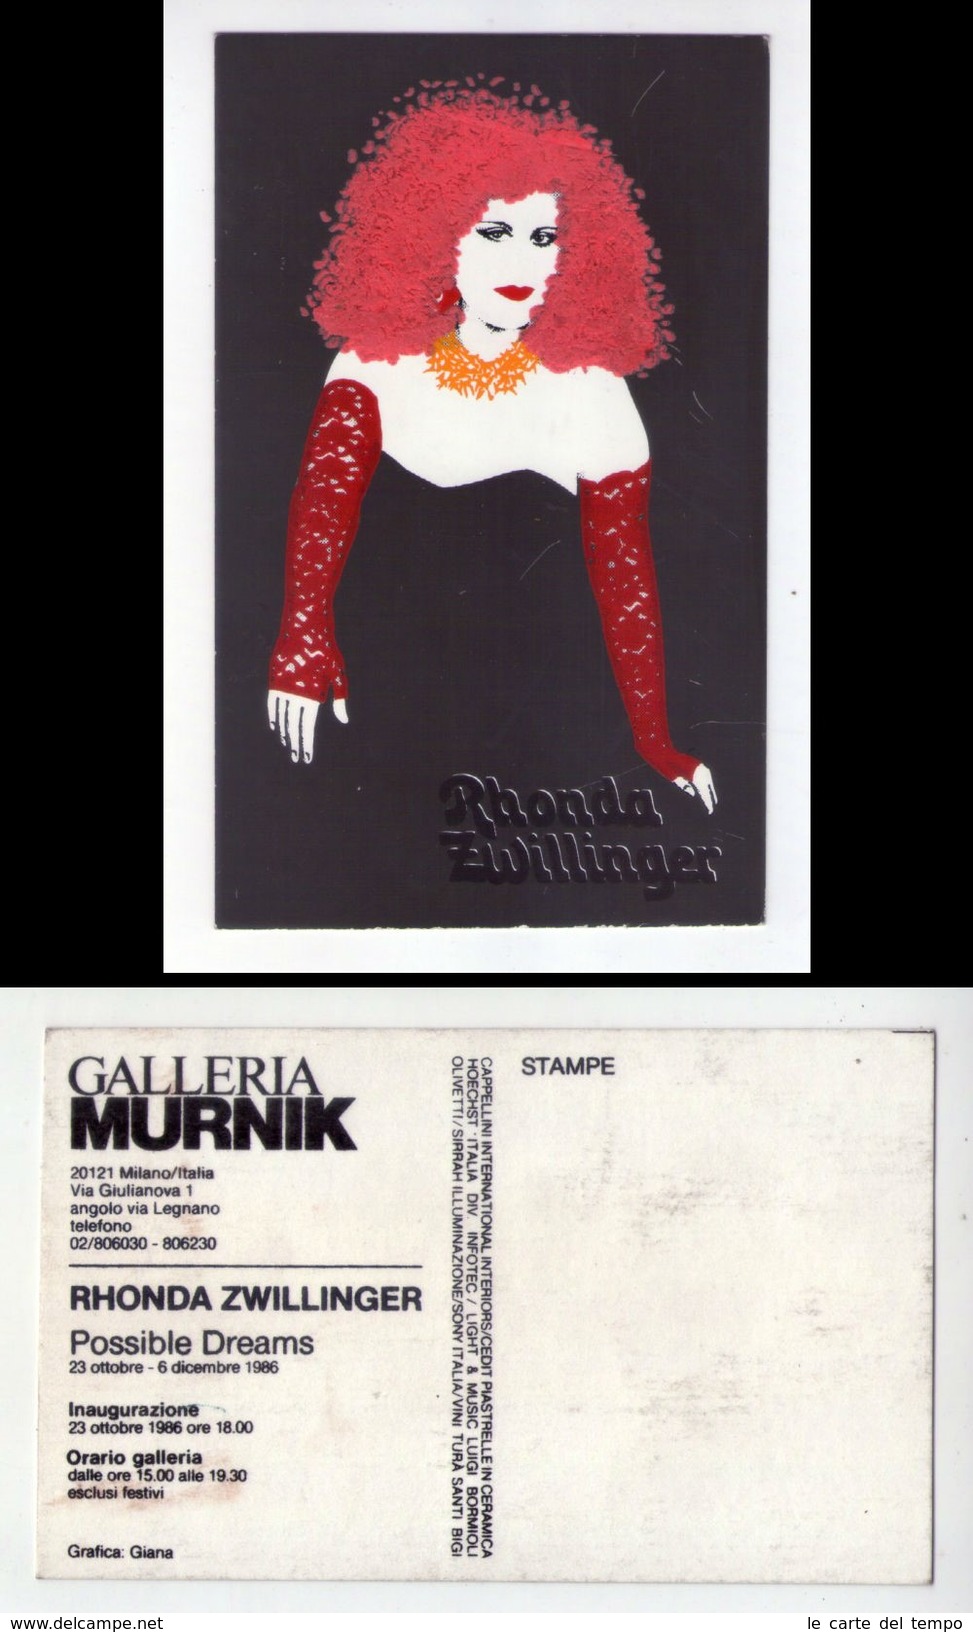 Cartolina Serigrafica Con Applicazioni. RHONDA ZWILLINGER "Possible Dreams" Inaugurazione 1986 - Inauguraciones